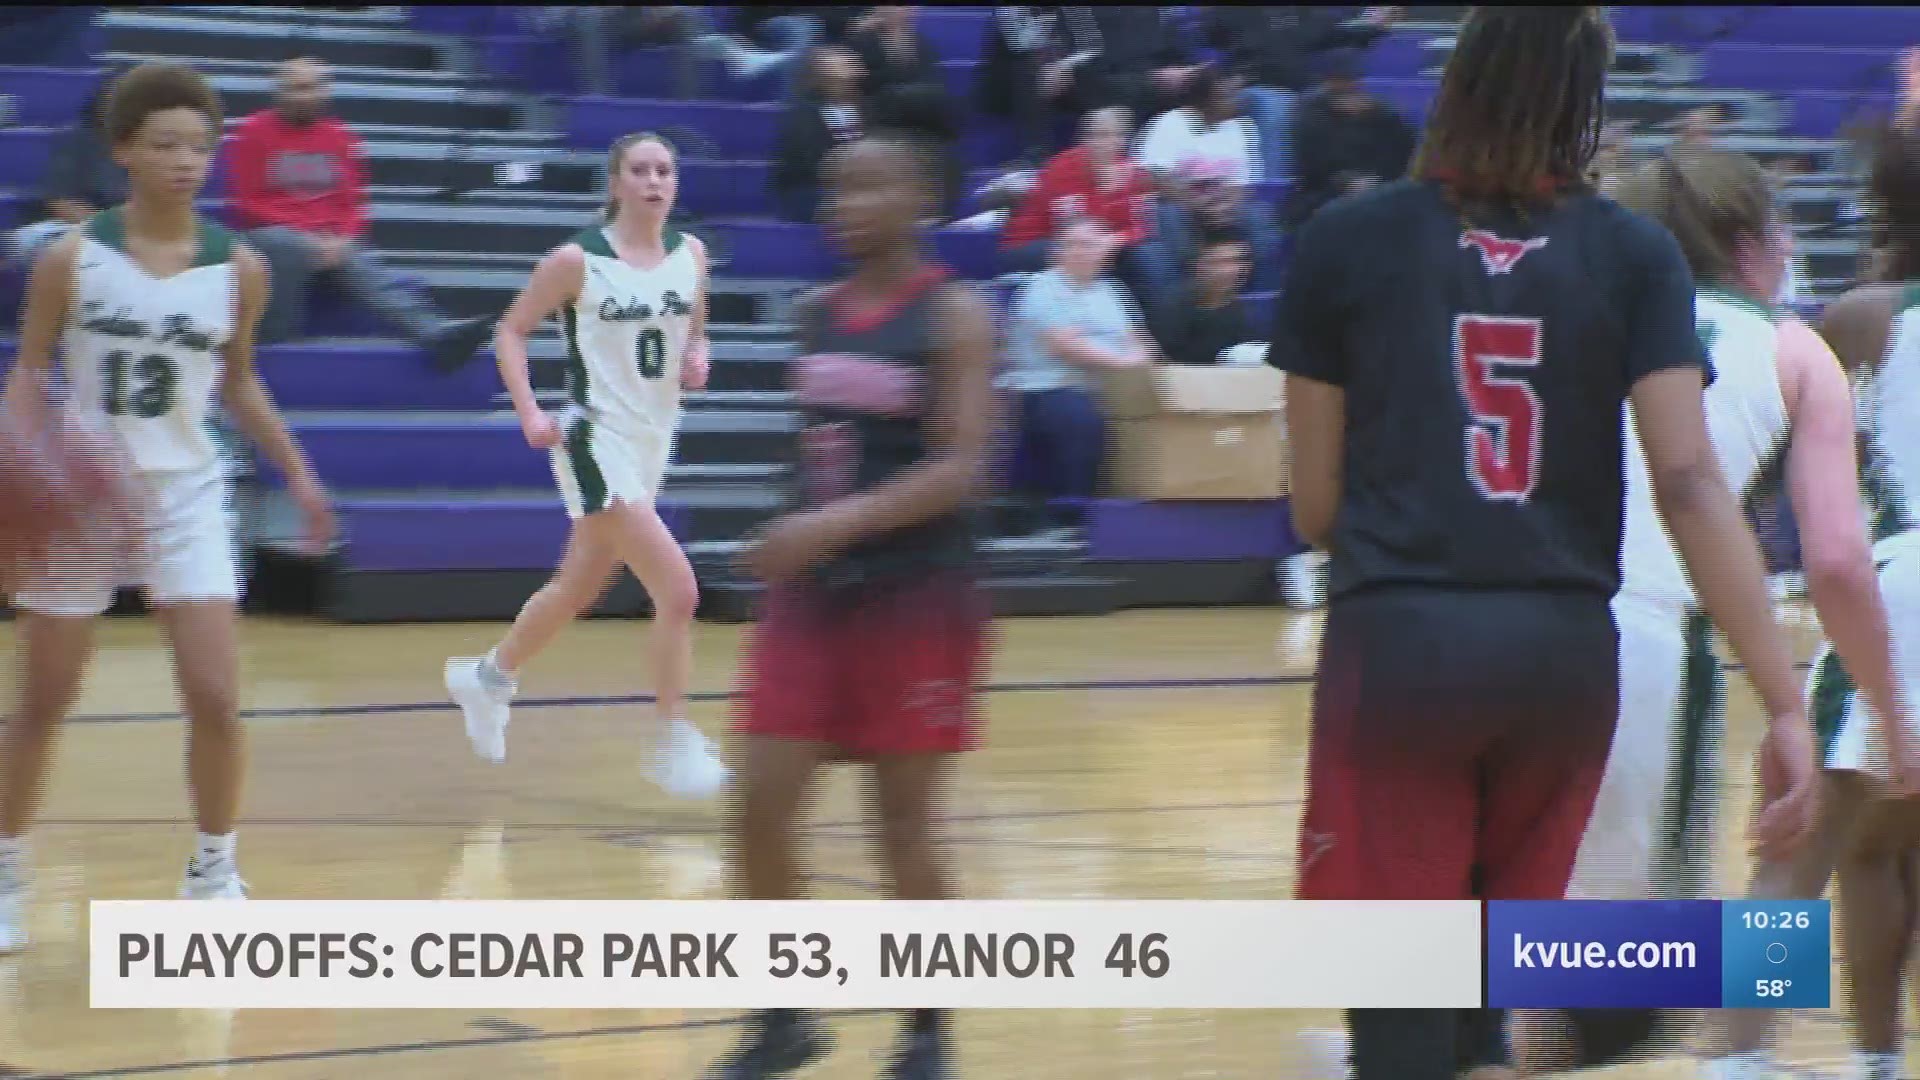 High school girls basketball playoffs are underway in Central Texas.